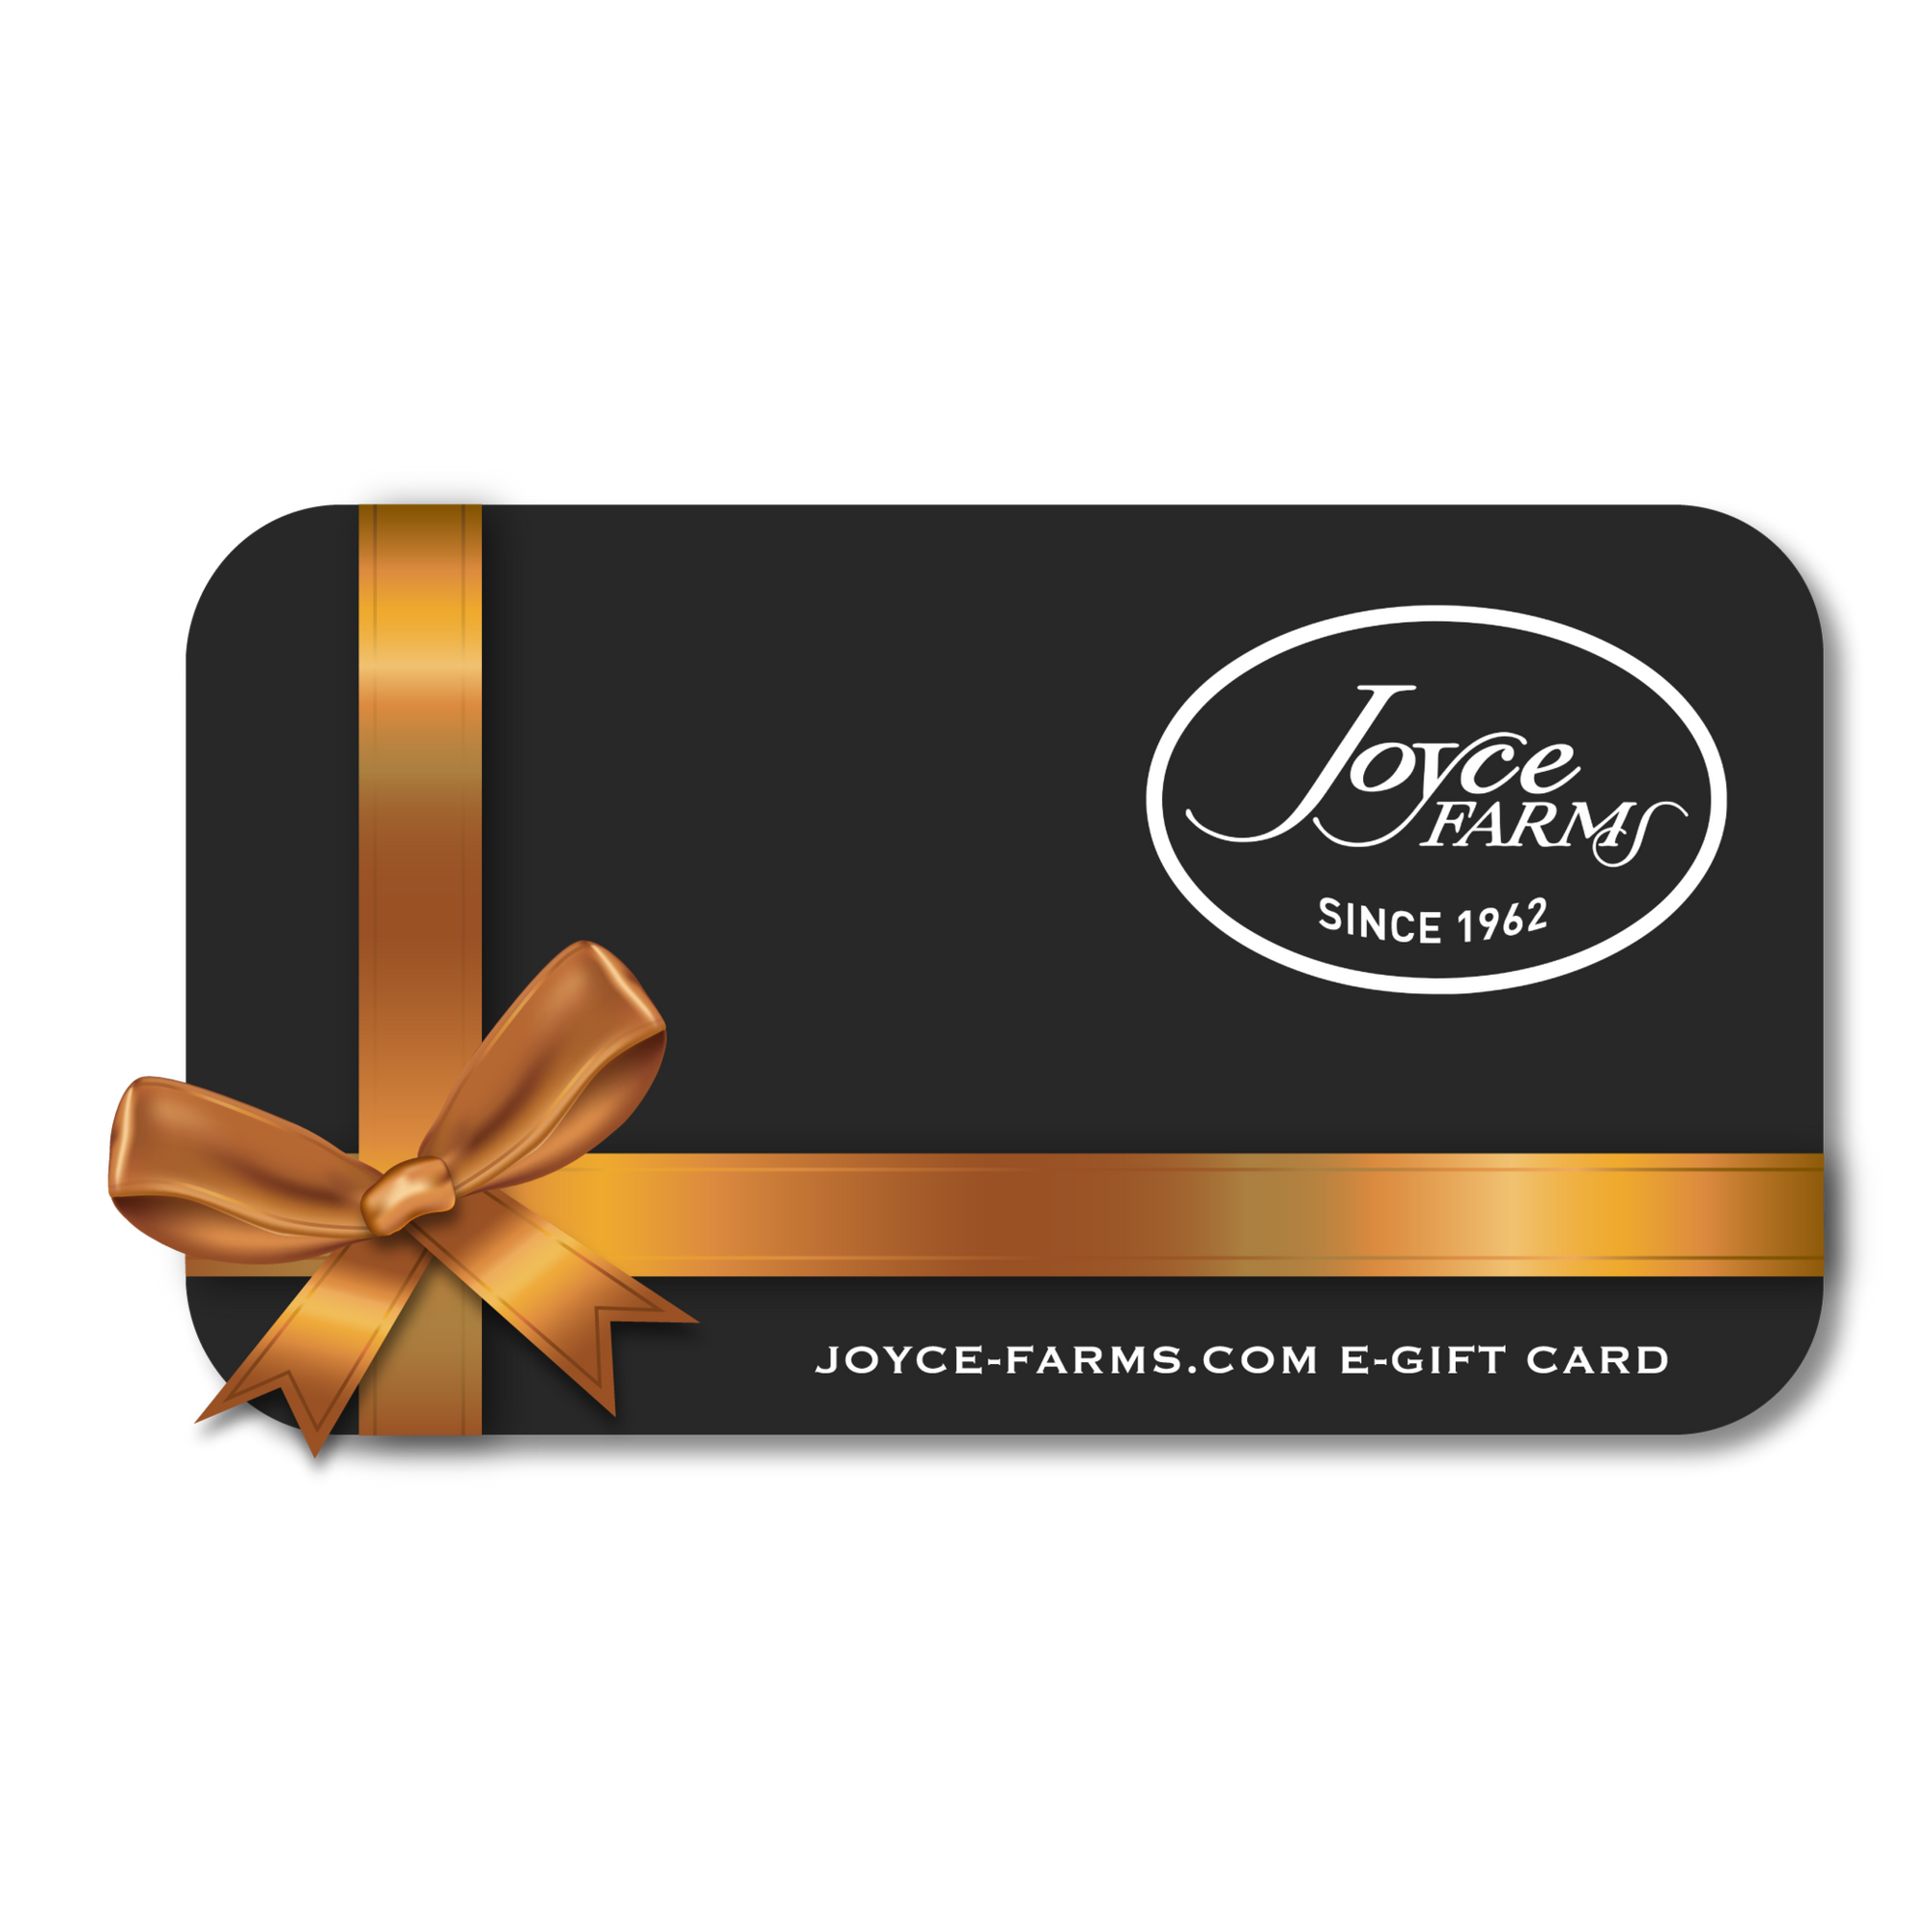 Joyce Farms Gift Card - Joyce Farms